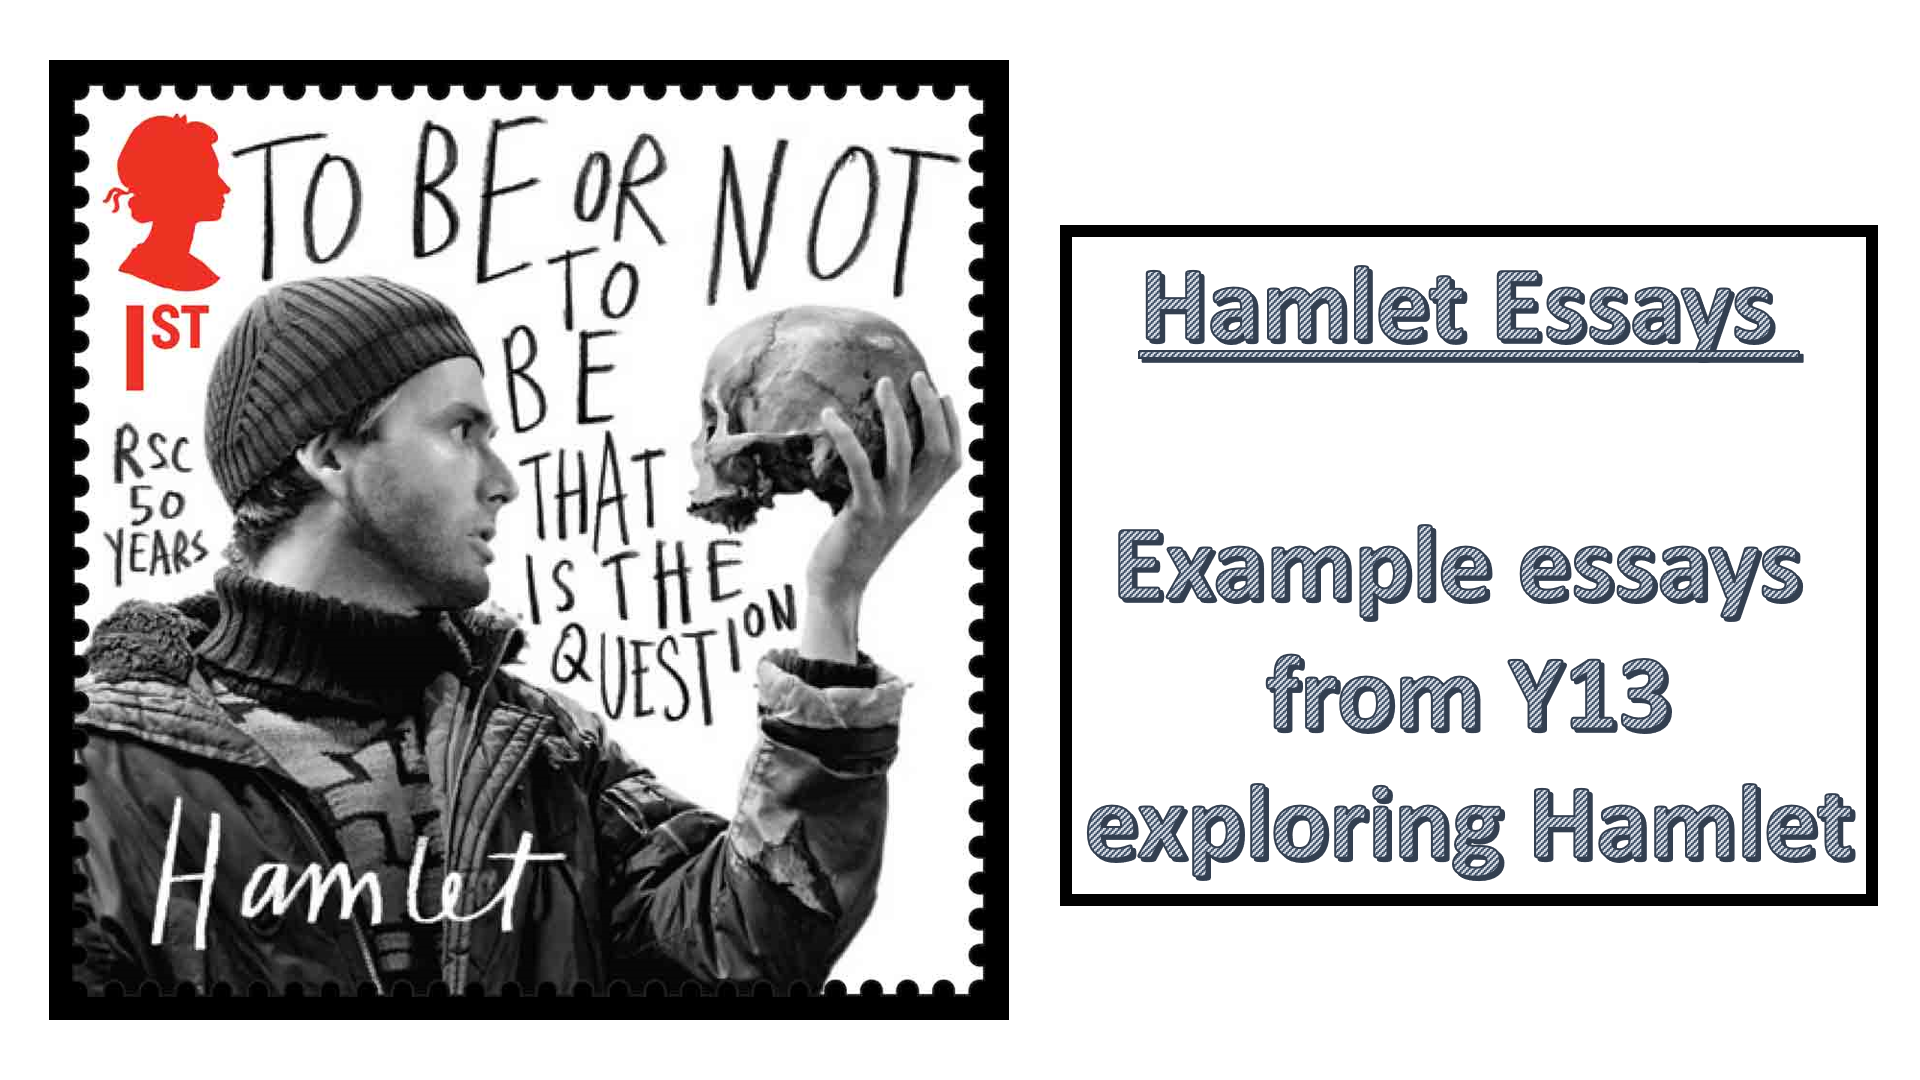 Hamlet revenge essay